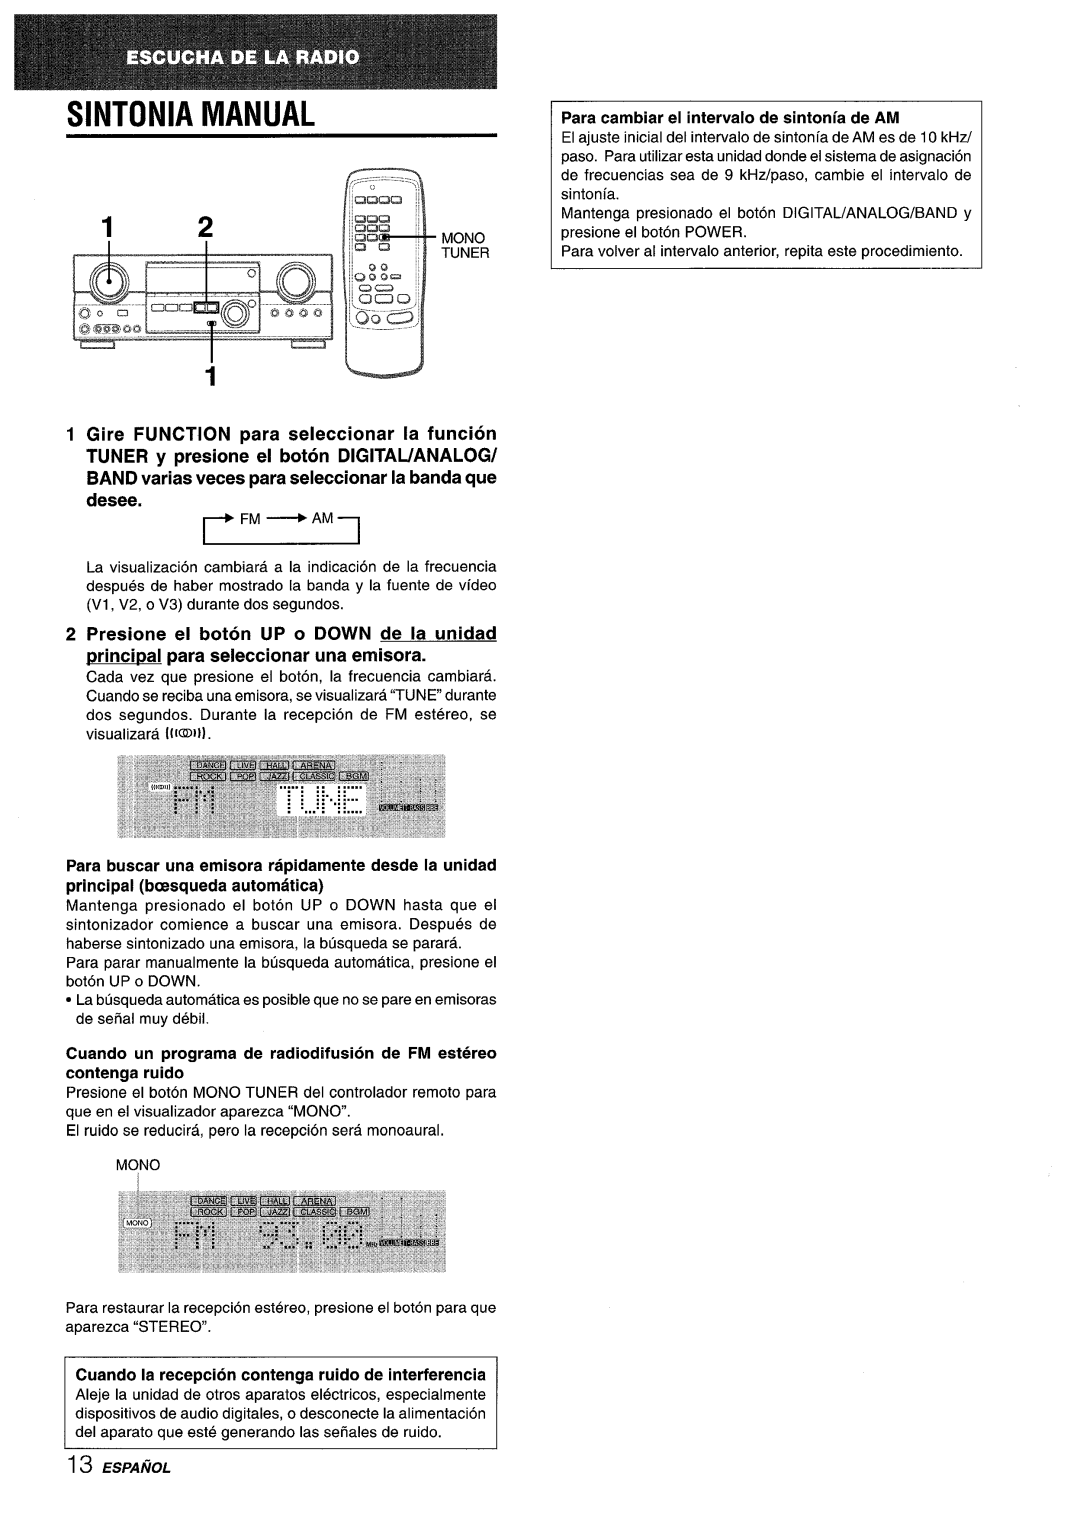 Sony AV-DV75 Sintonia Manual, Gire FUNCTION para seleccionar la funcion, contenga ruido, principal bcesqueda automatic 